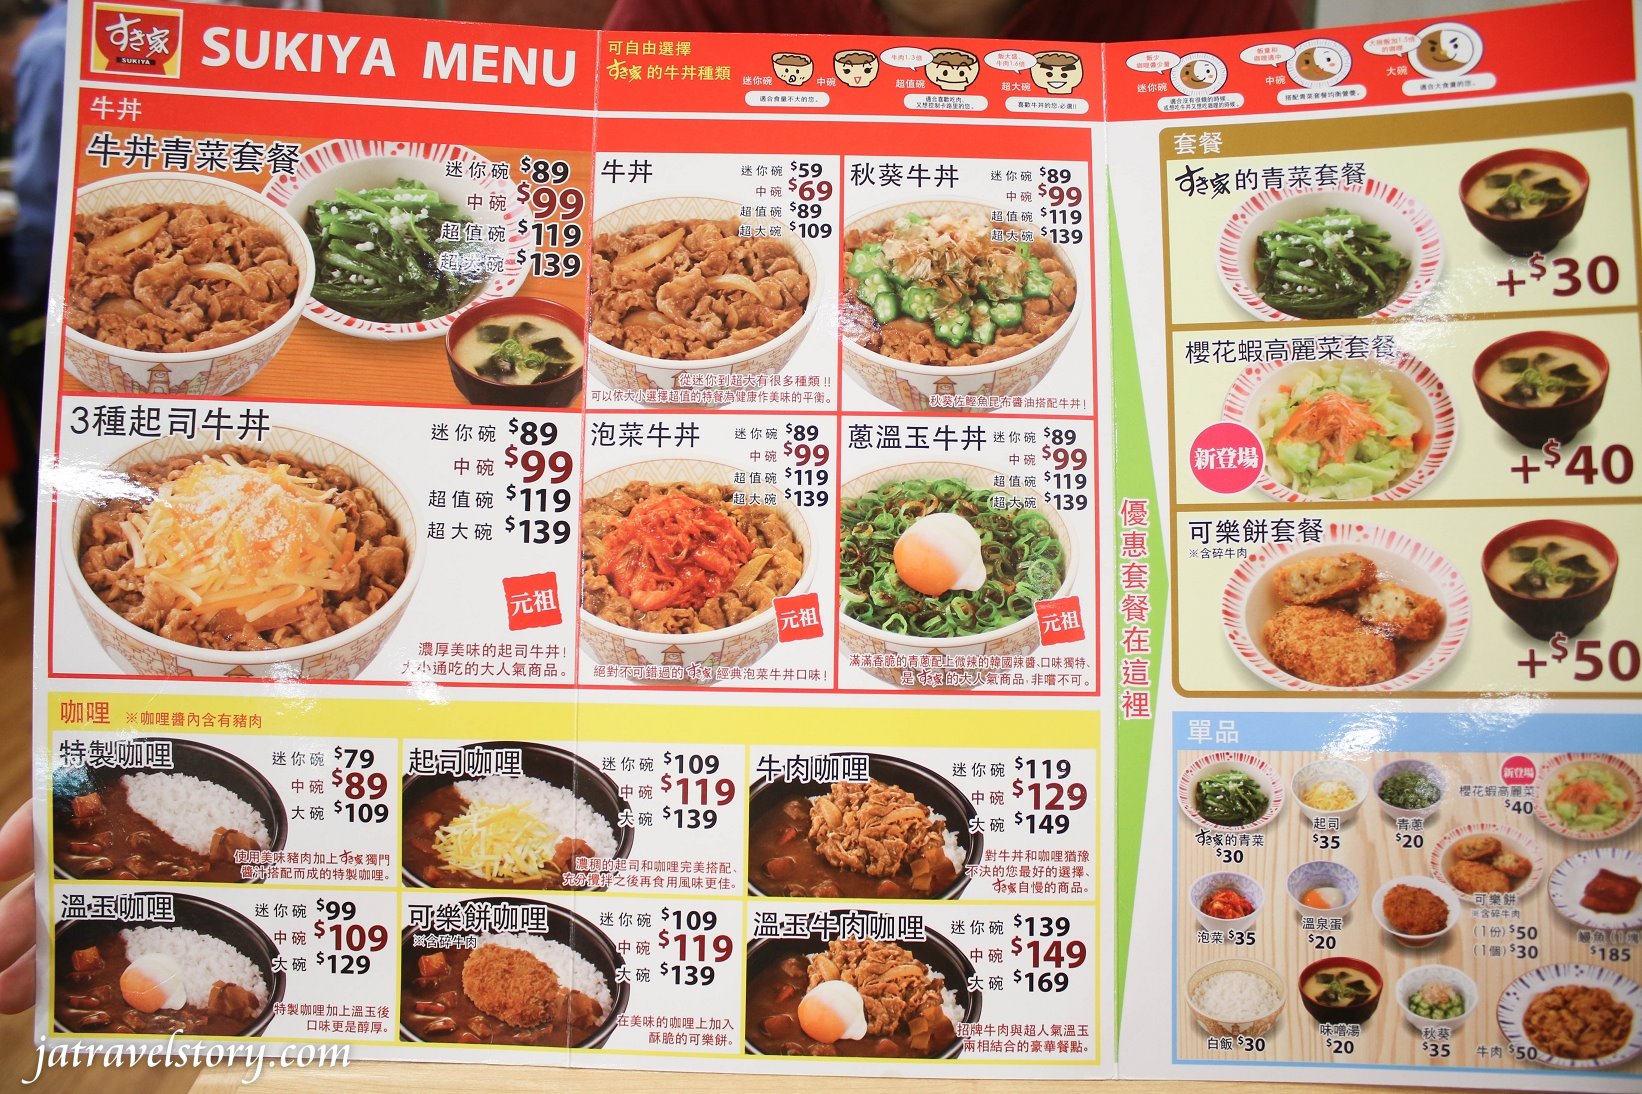 平價牛丼59元起,還有鰻魚丼、咖哩可以選擇。【基隆美食】すき家 sukiya @J&amp;A的旅行